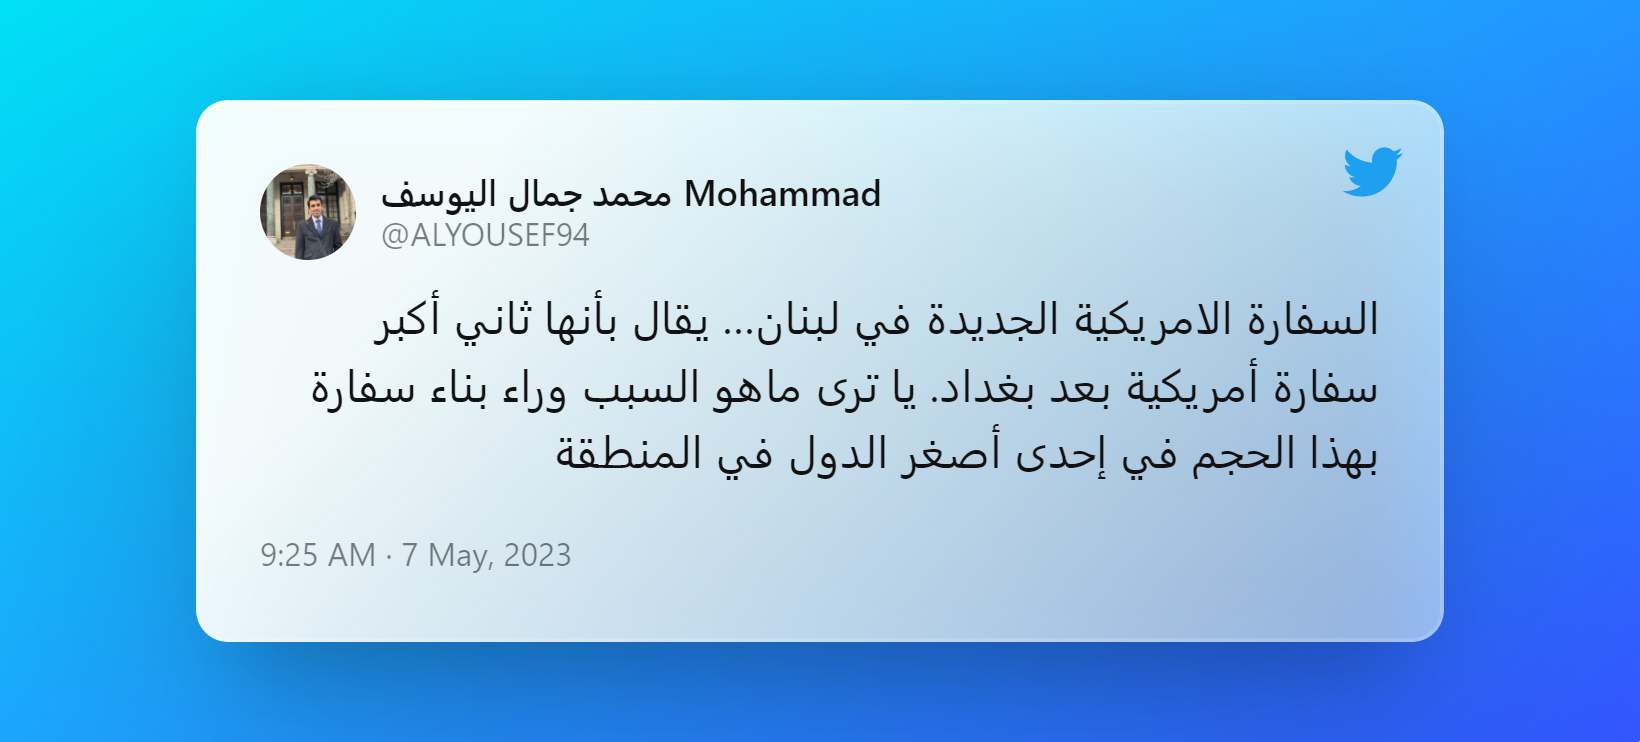 Tweet by محمد جمال اليوسف Mohammad